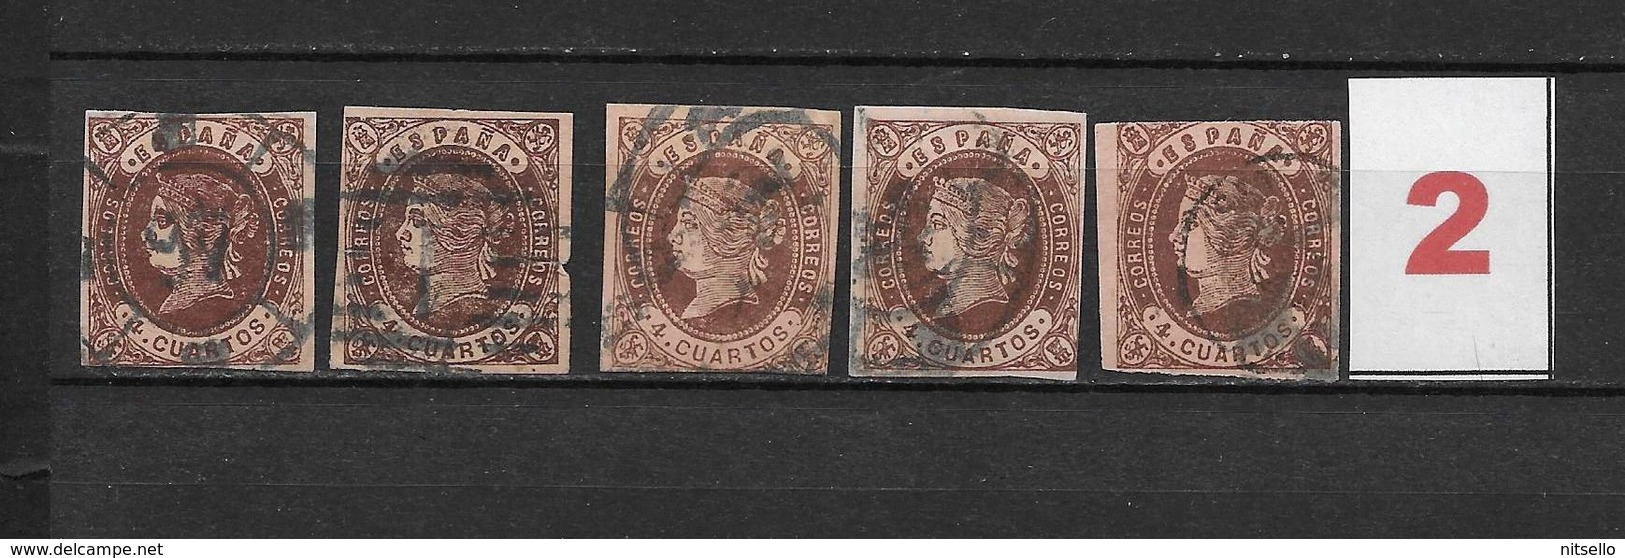 LOTE 1812  /// (C020) ESPAÑA  AÑO 1862   - EDIFIL Nº: 58  VARIEDADES DE COLOR ¡¡¡ OFERTA !!! - Used Stamps